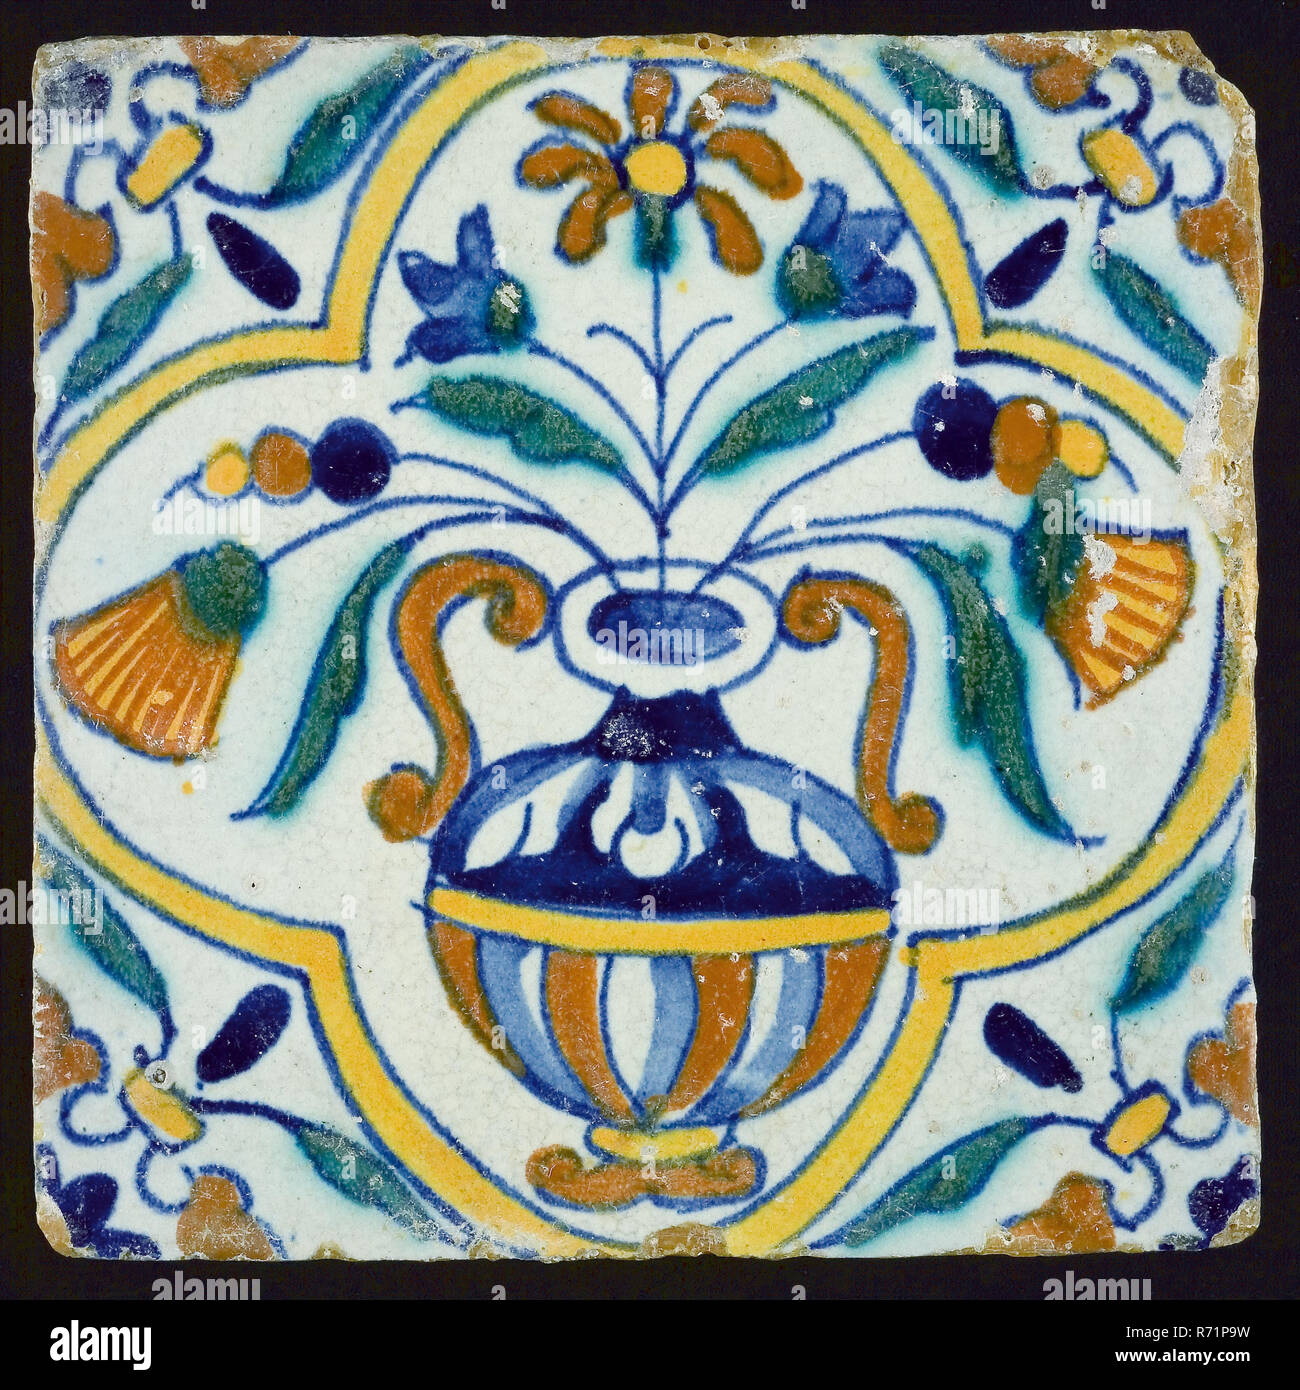 3 Antique Ceramic Tile Painted Floral 4 SQ Arts & Crafts Vintage Old  1274-22B